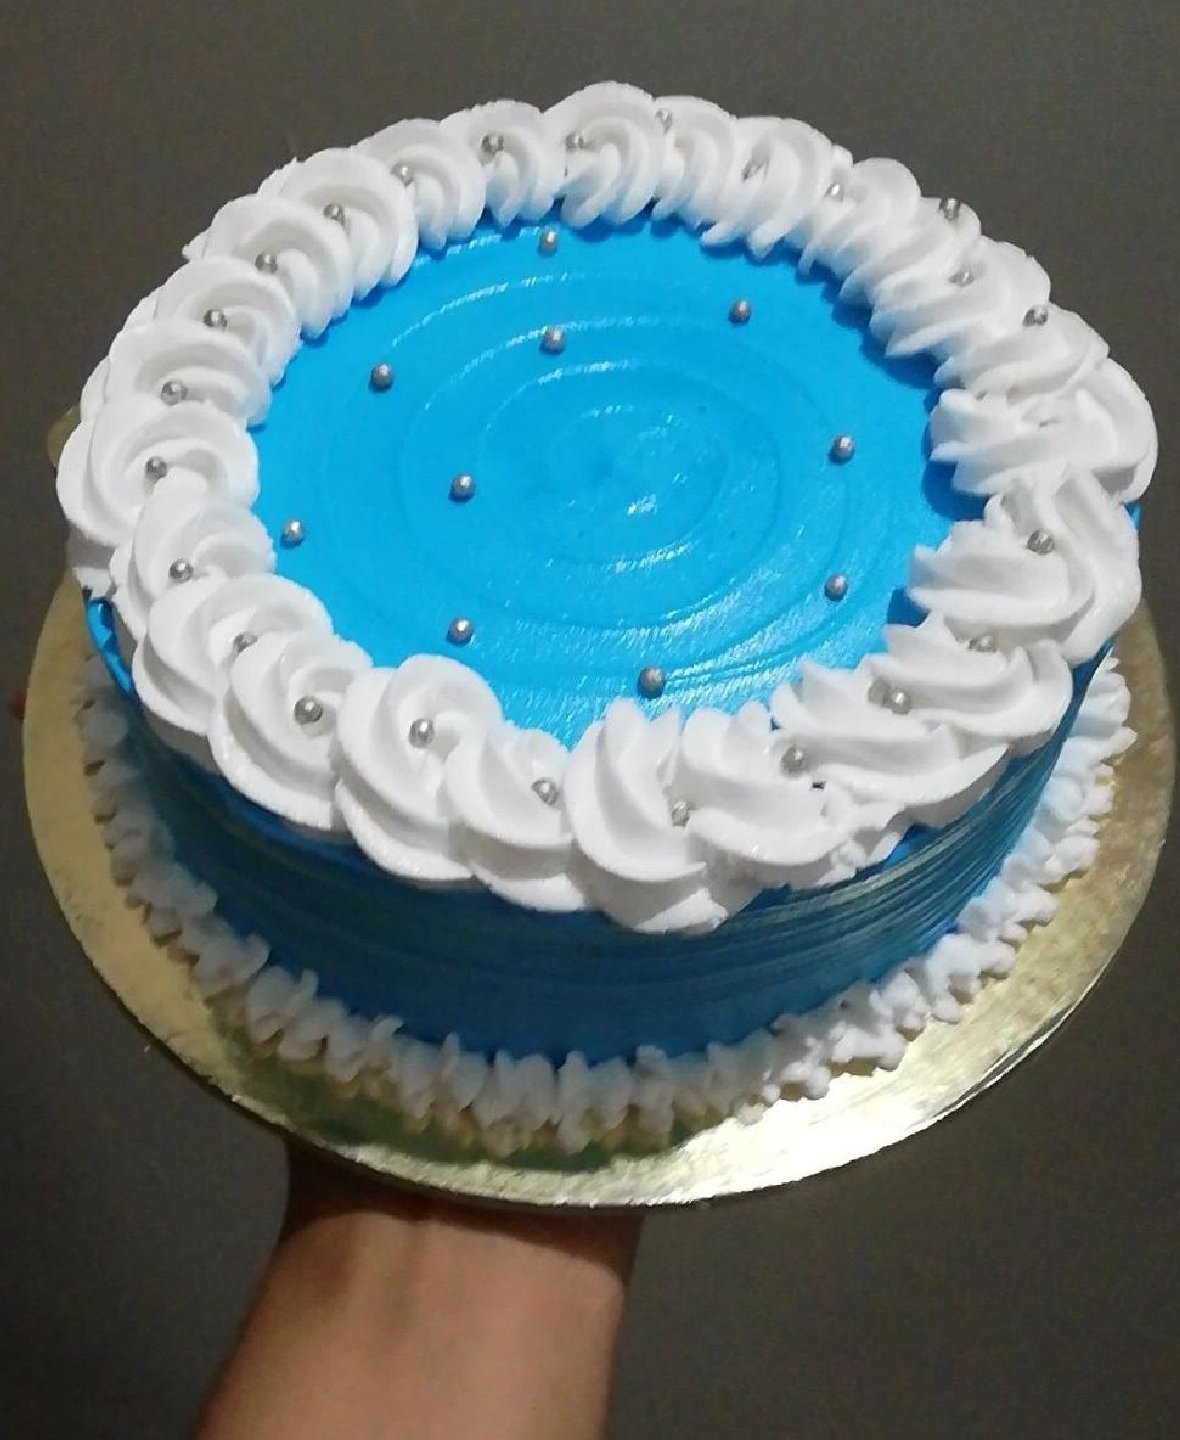 Blue Velvet Cake, 7th heaven